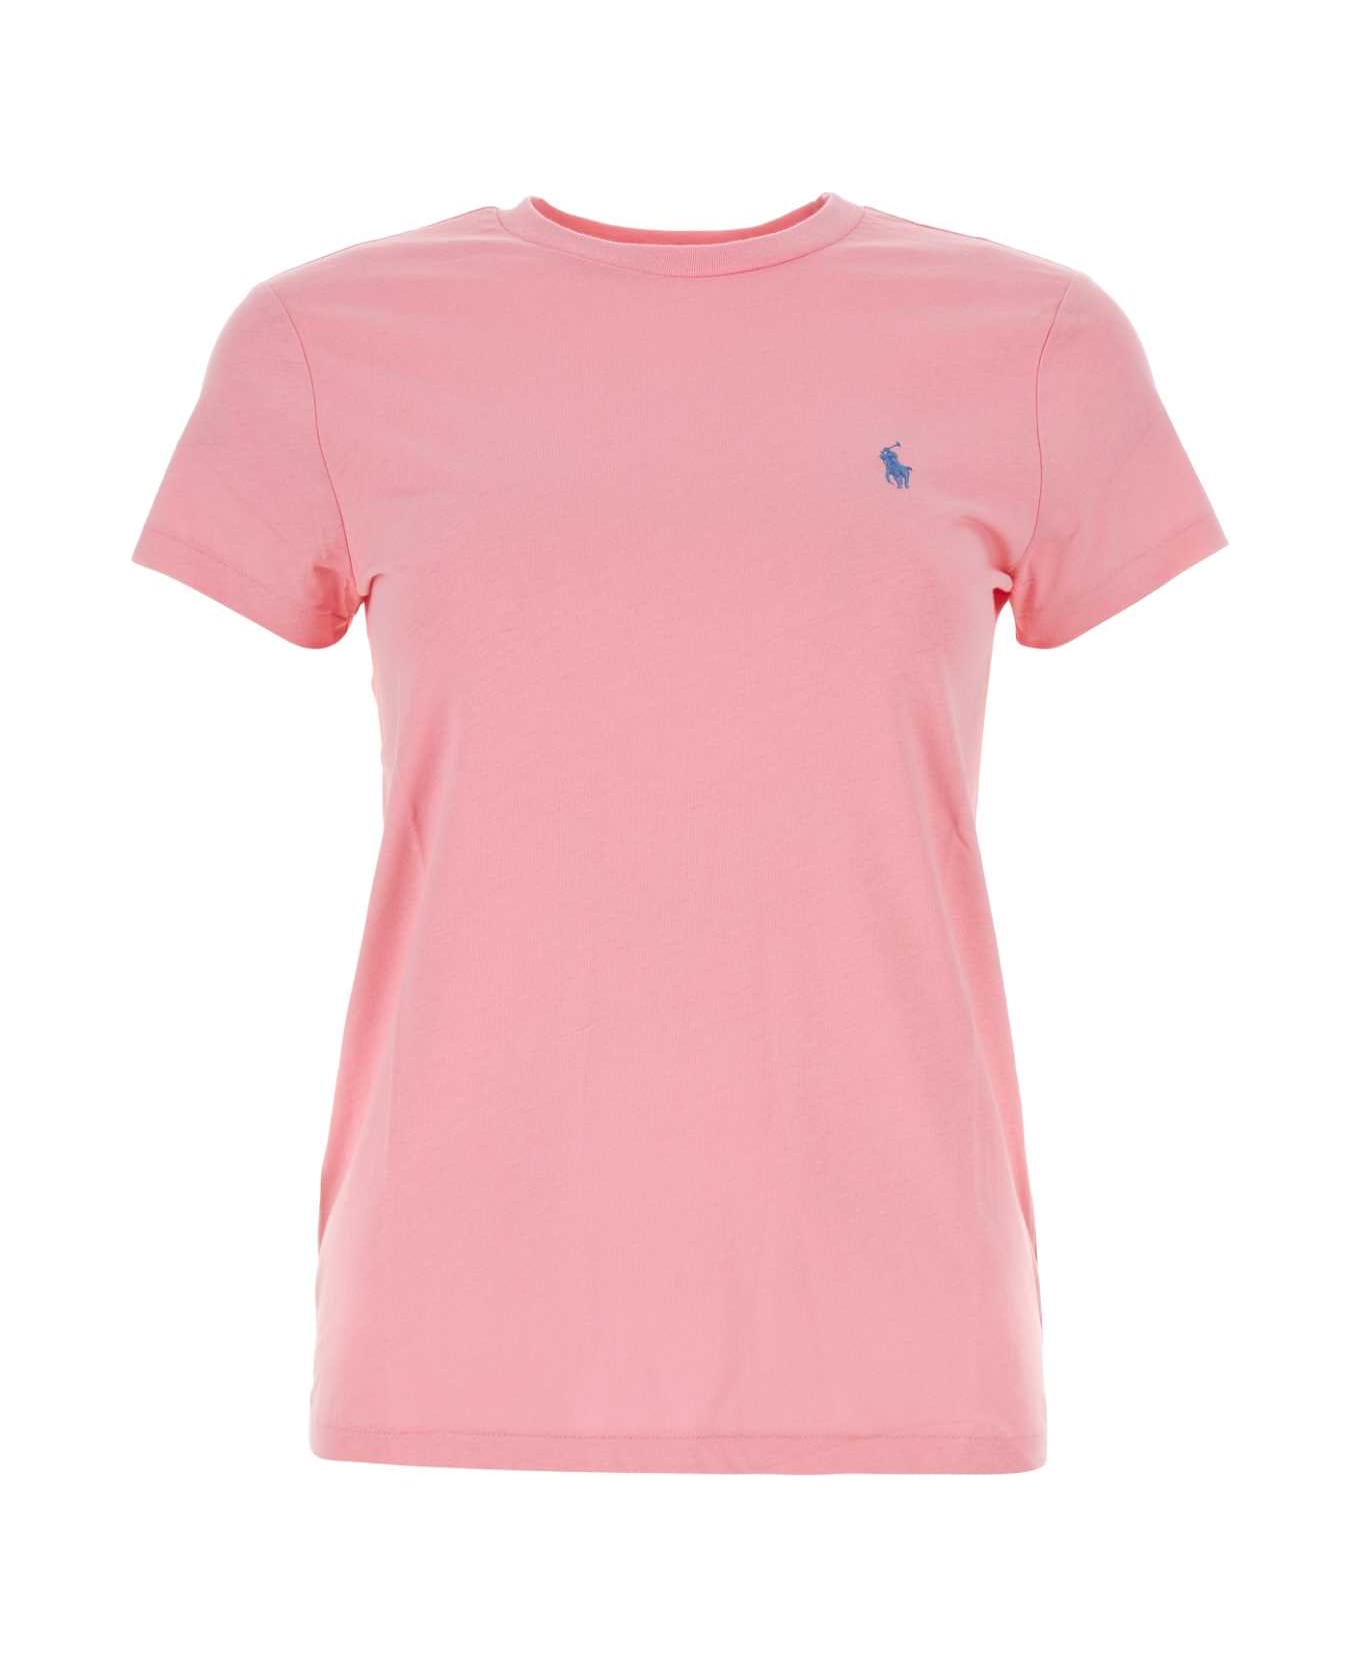 Polo Ralph Lauren Pink Cotton T-shirt - COURSEPINK